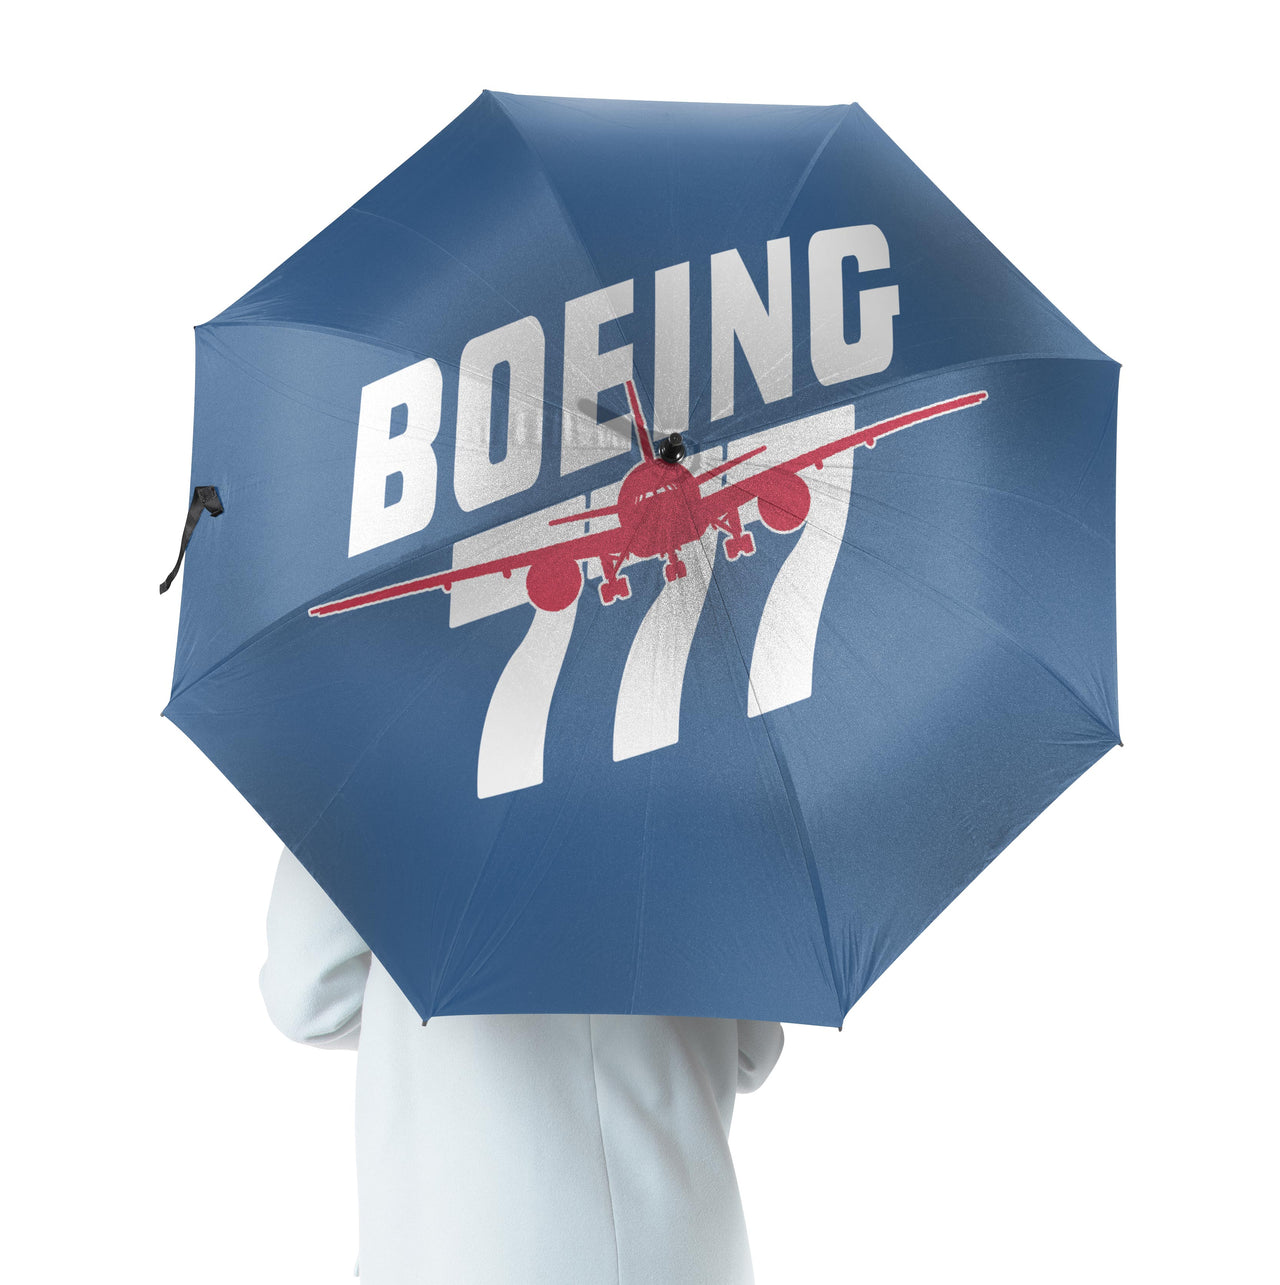 Amazing Boeing 777 Designed Umbrella